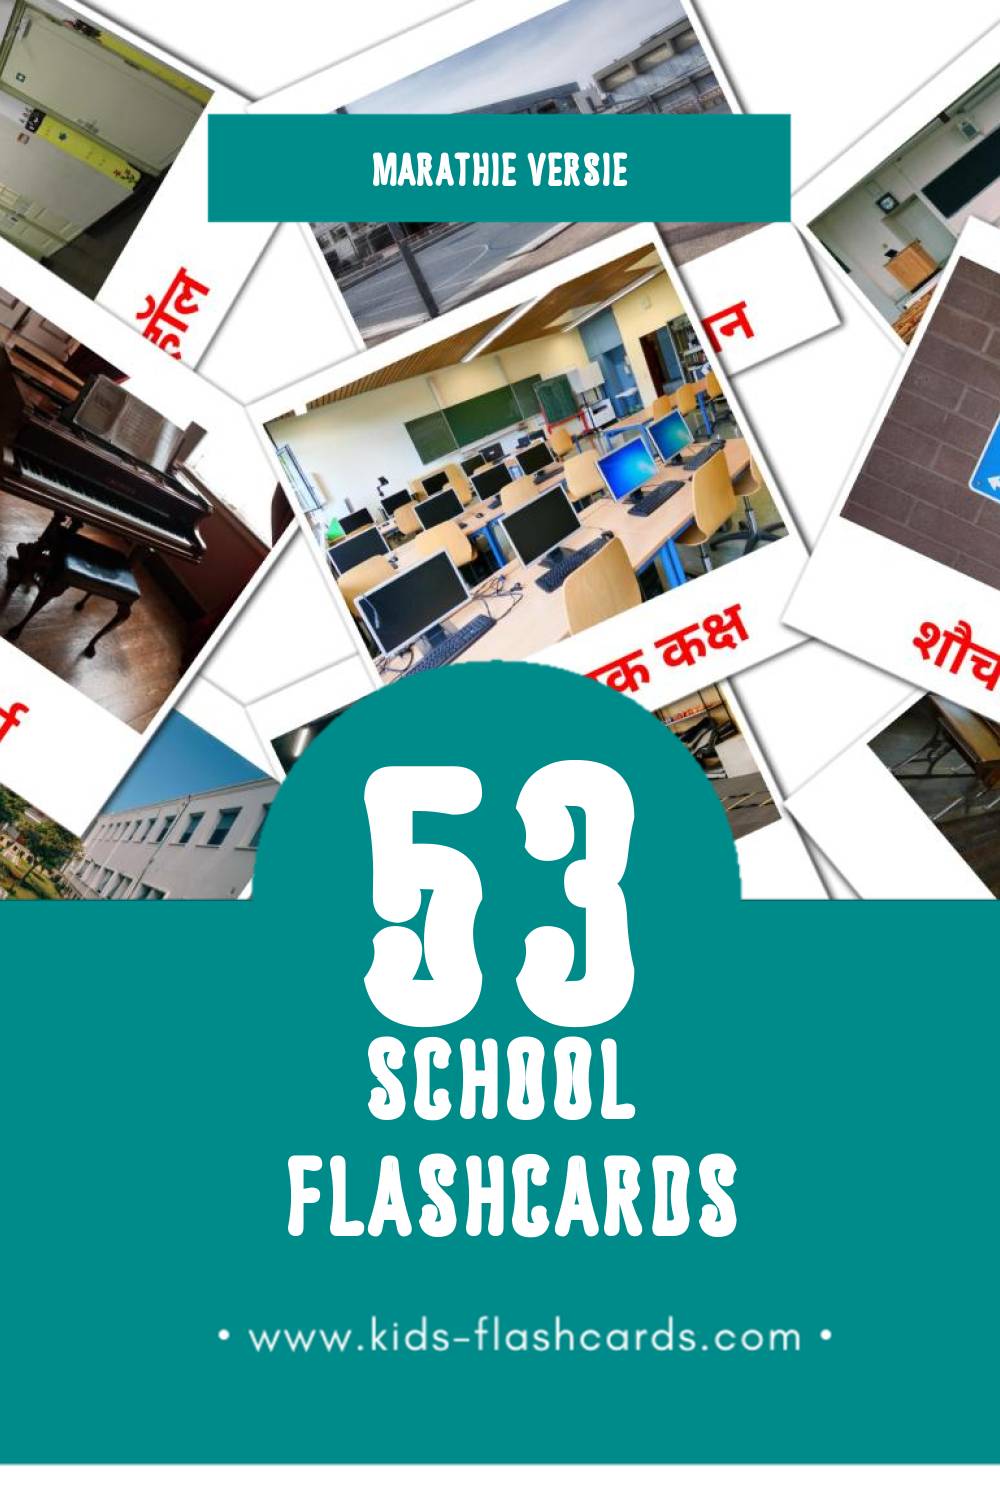 Visuele शाळा  Flashcards voor Kleuters (53 kaarten in het Marathi)